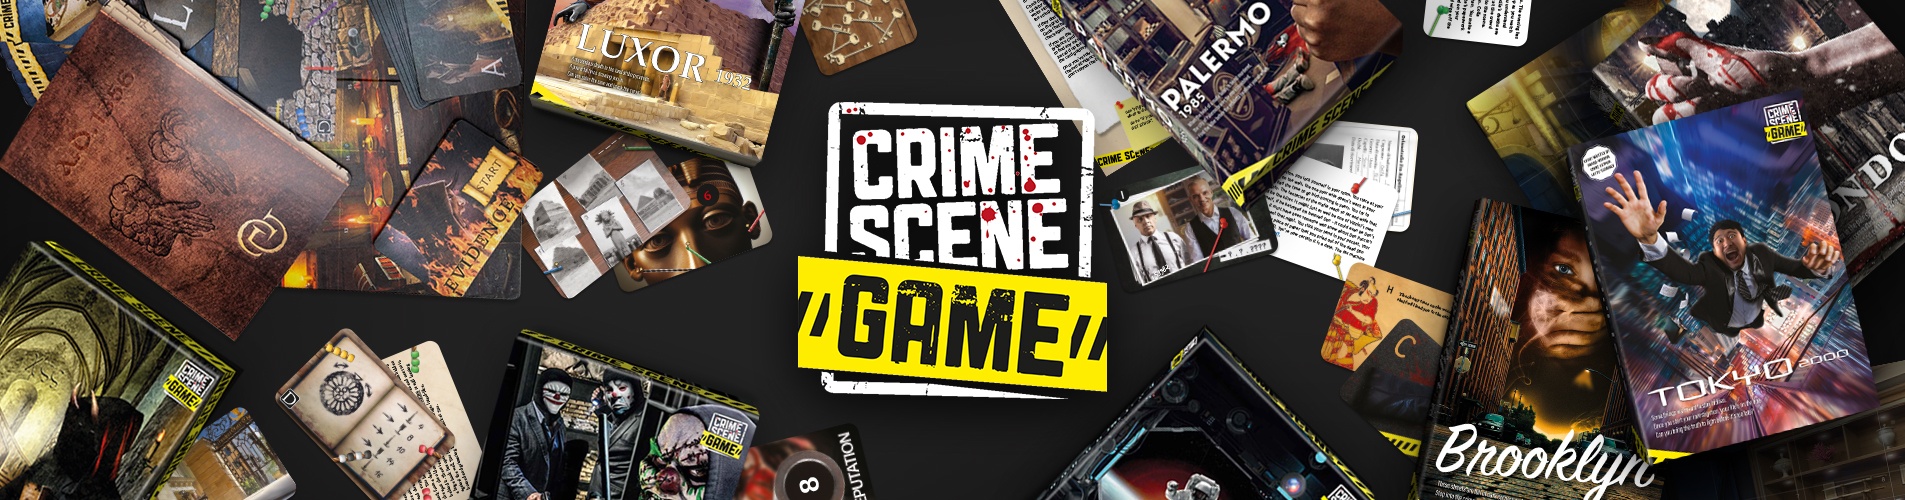 Crime Scene spil - Se det store udvalg af spændende detektivspil